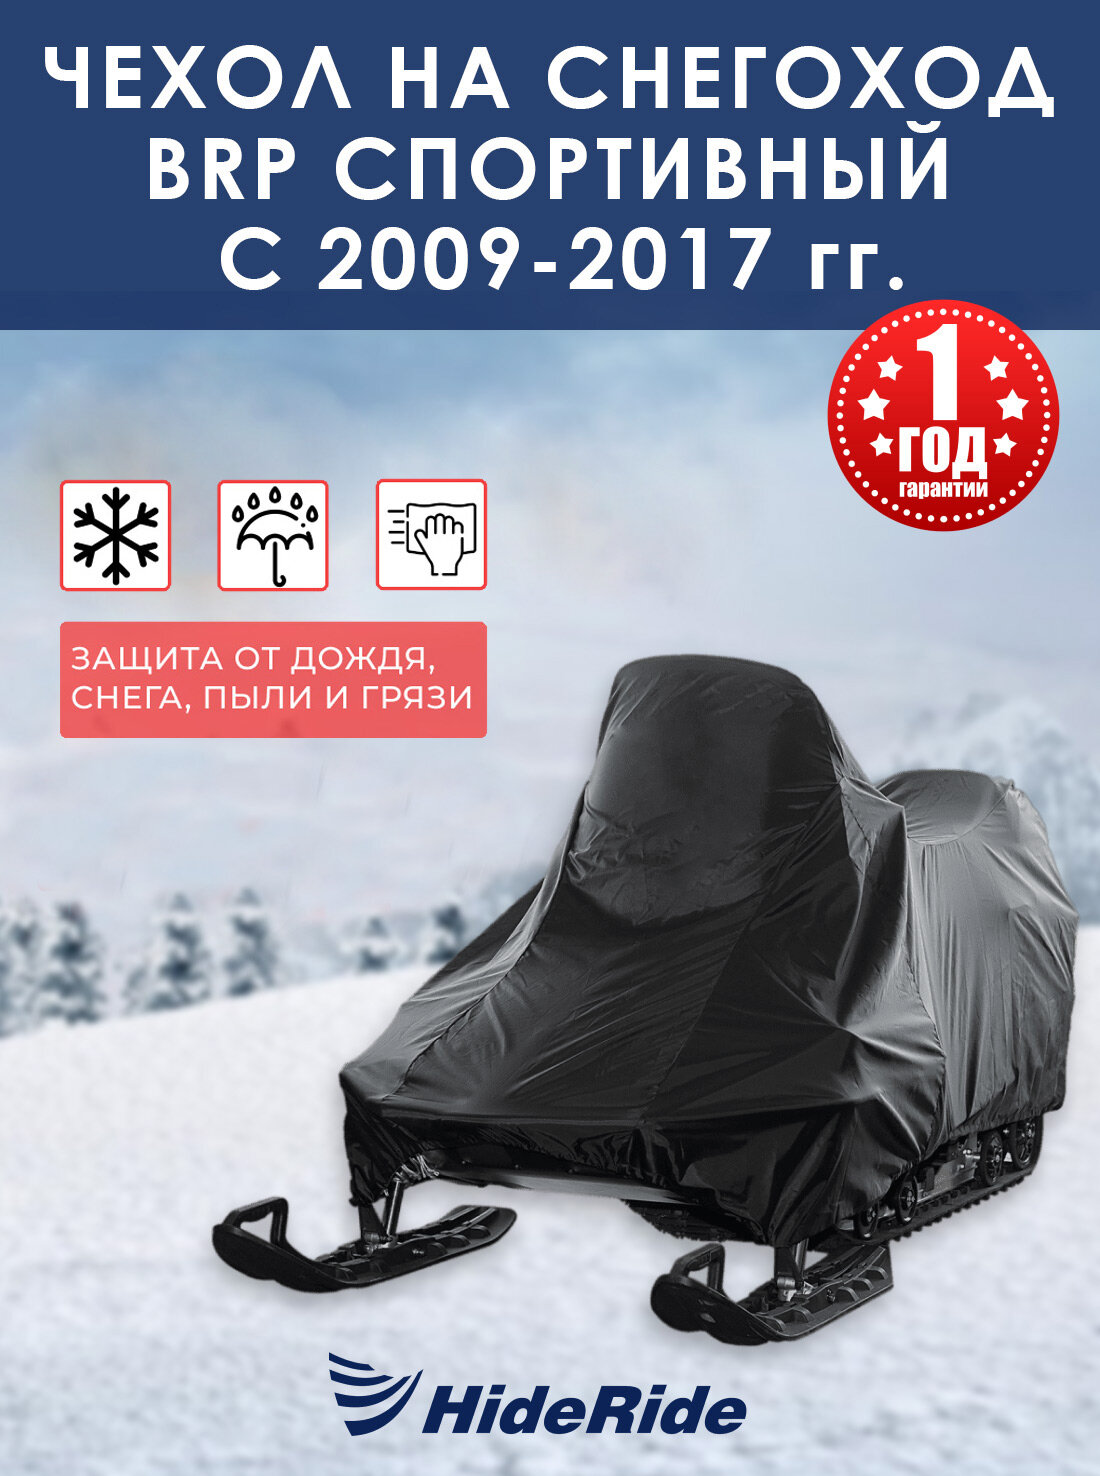 Чехол для снегохода BRP HideRide спортивный c 2009-2017 г, стояночный, тент защитный